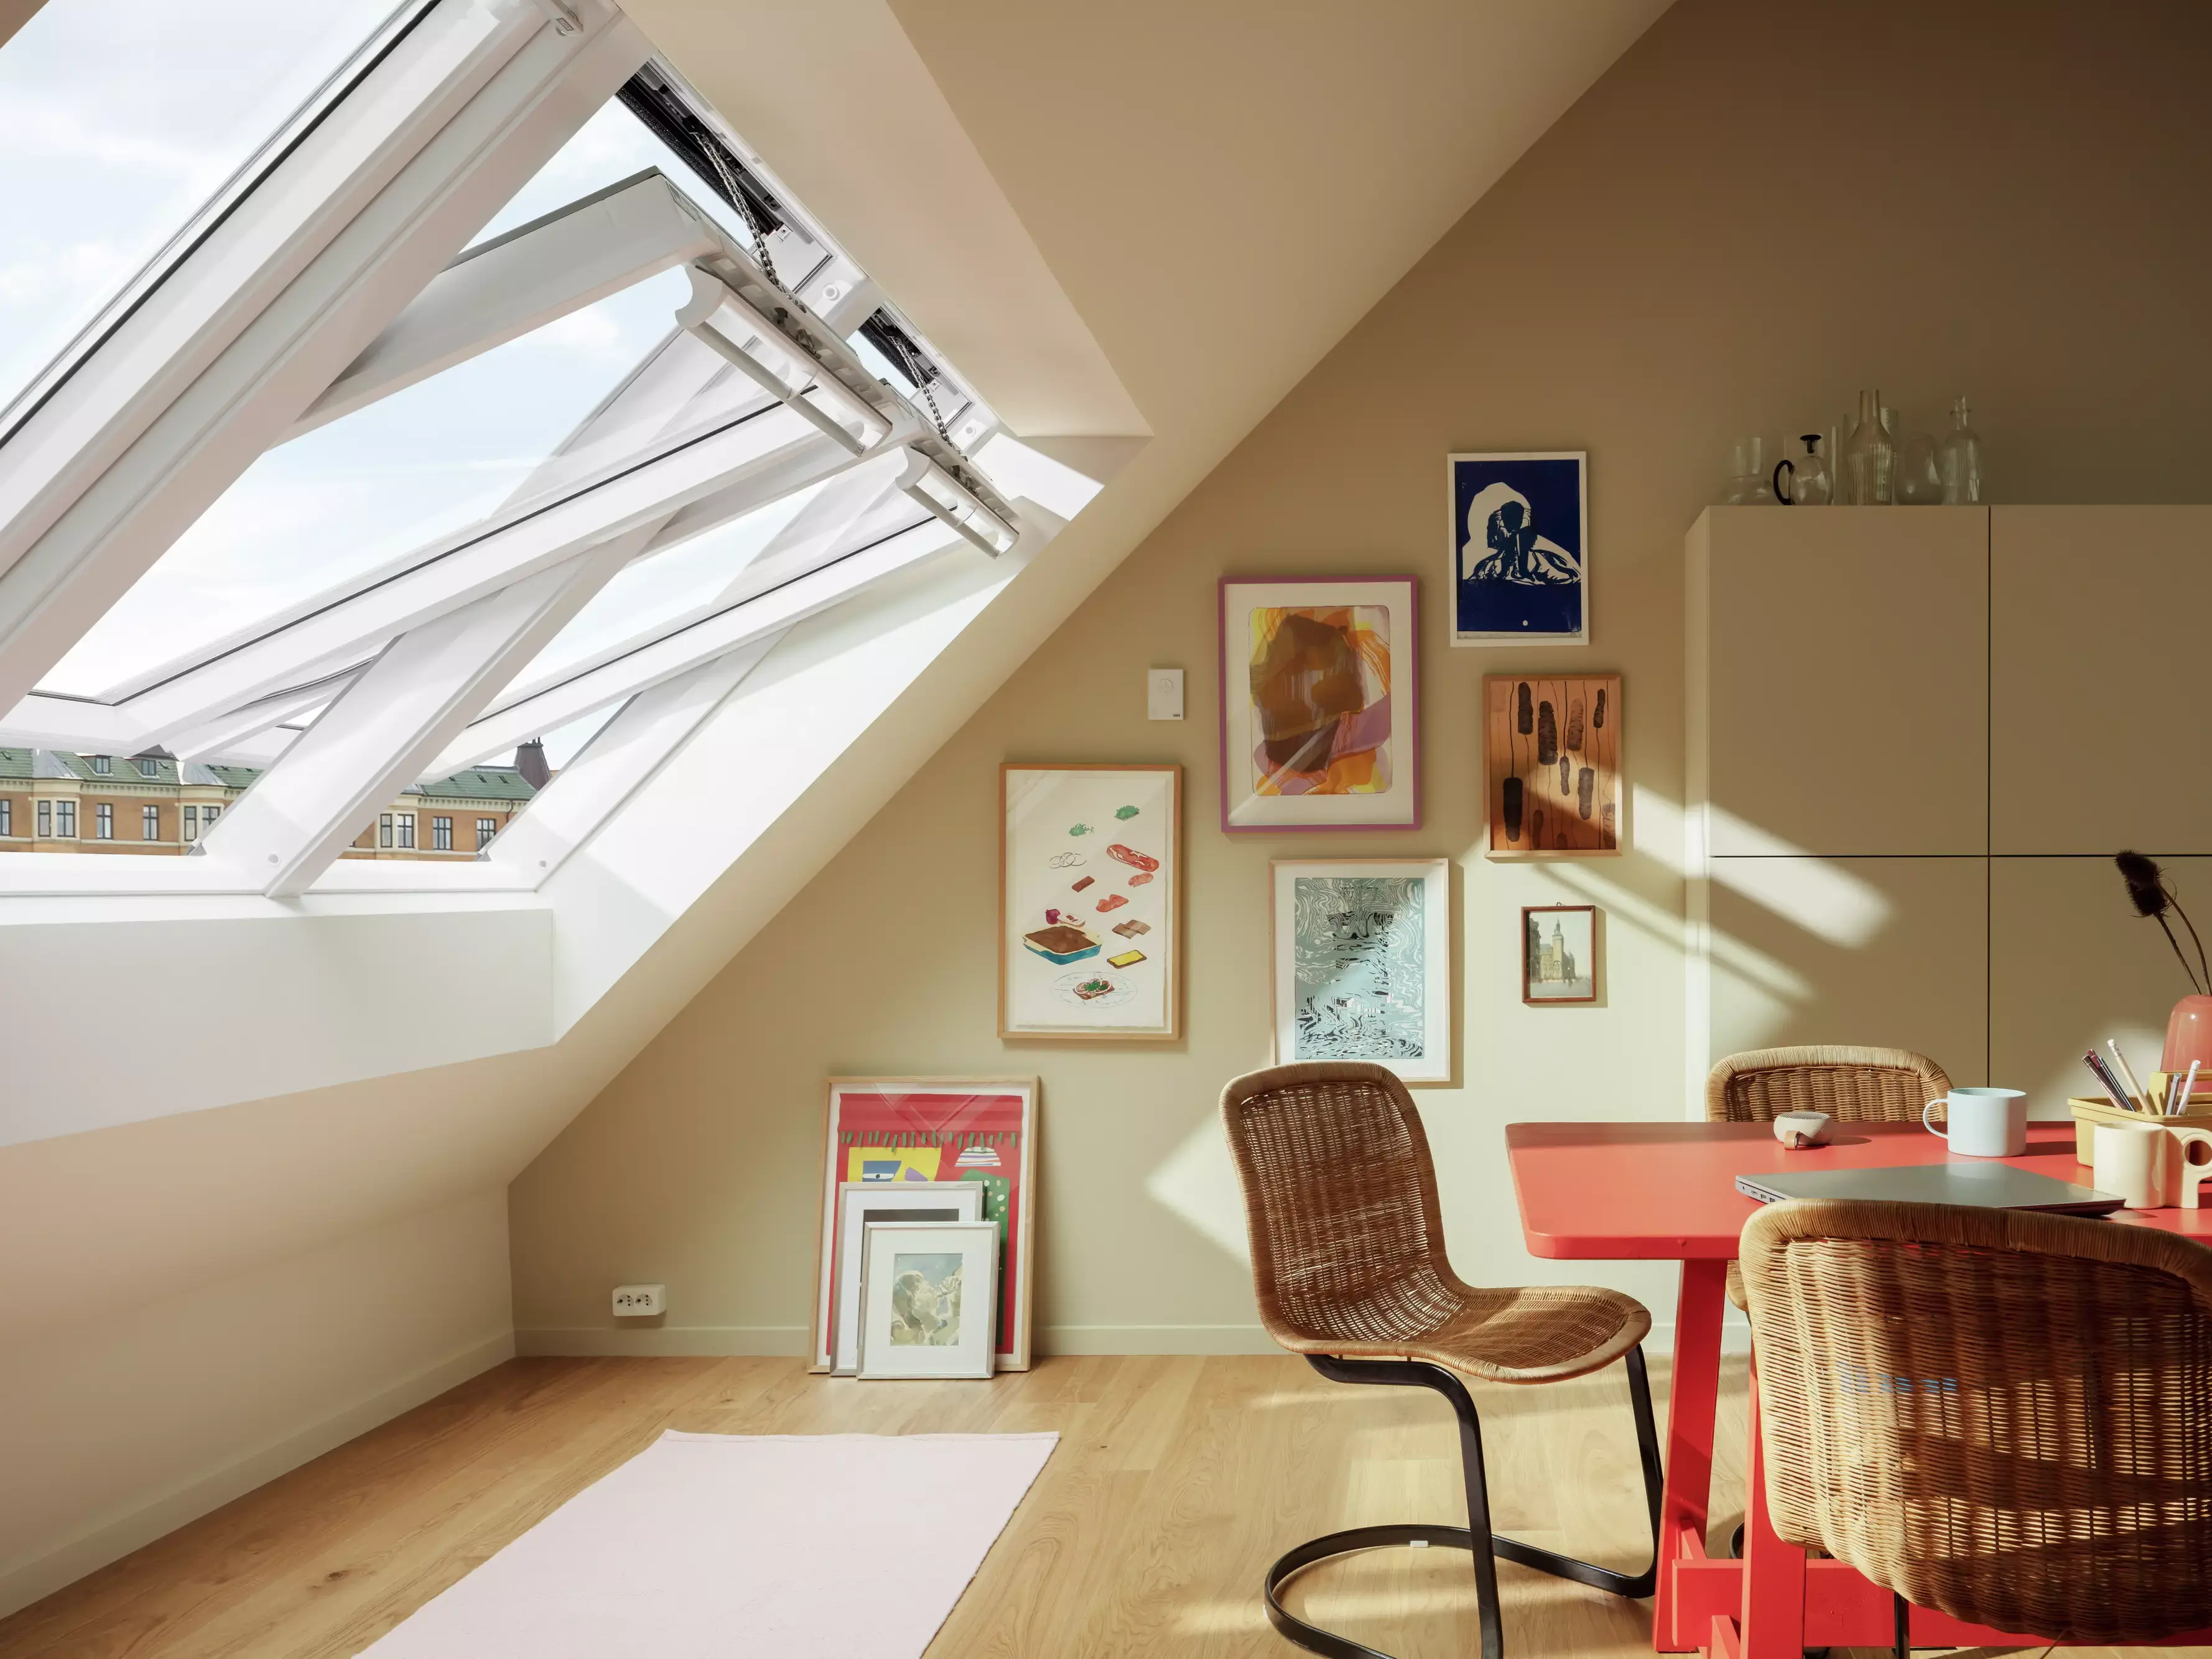 Bureau à domicile de type loft avec fenêtres VELUX, décoration artistique et bureau rouge.